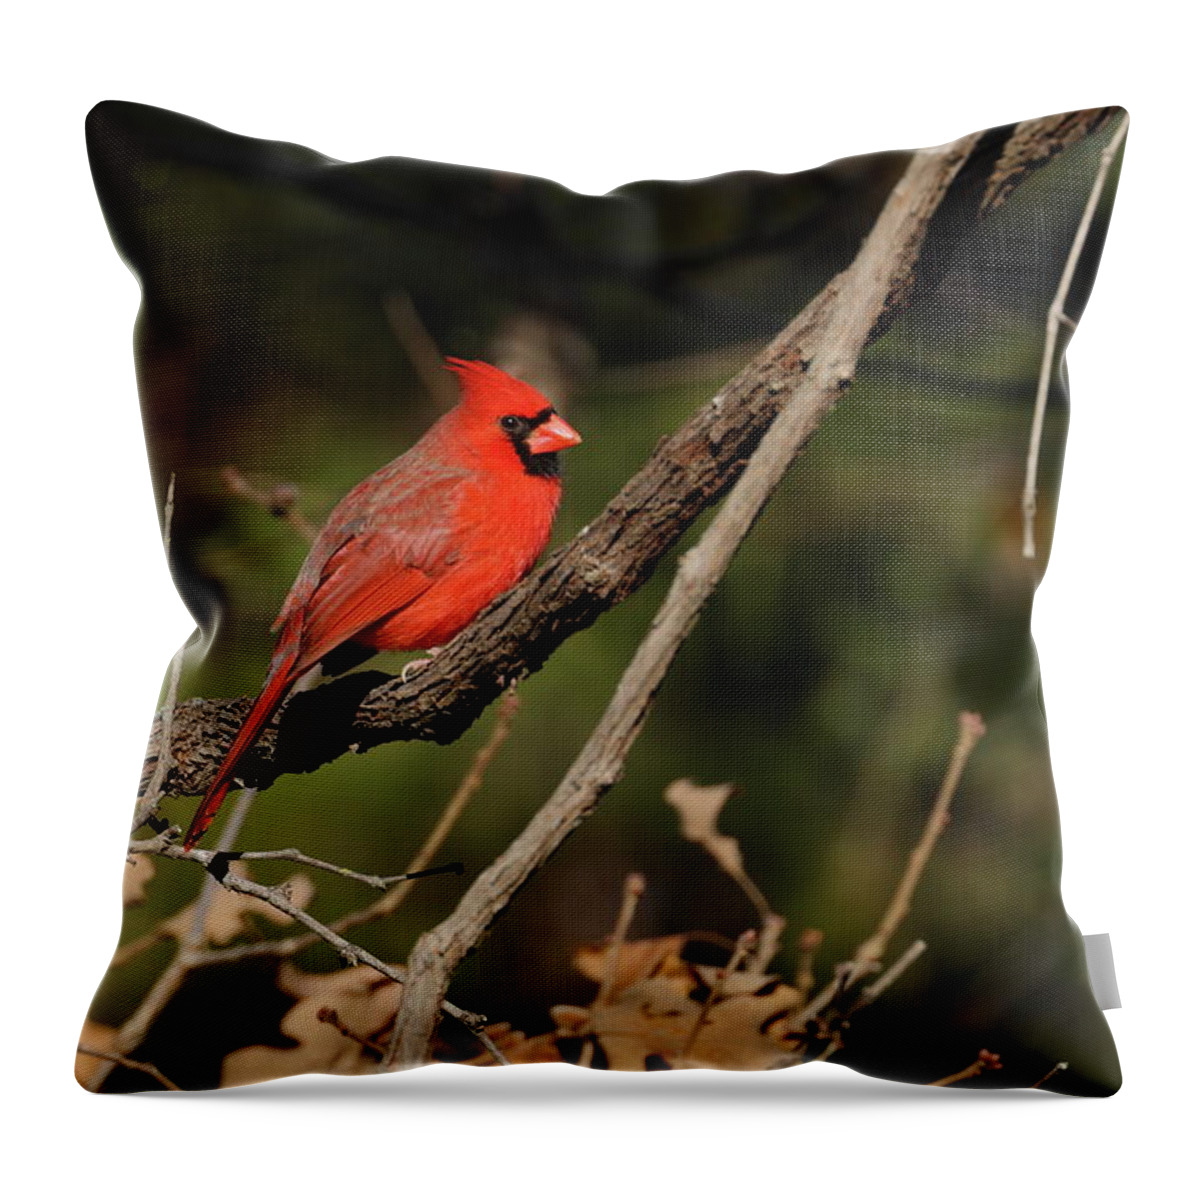 Northern Cardinal Throw Pillow featuring the photograph Cardinal 2575 by John Moyer